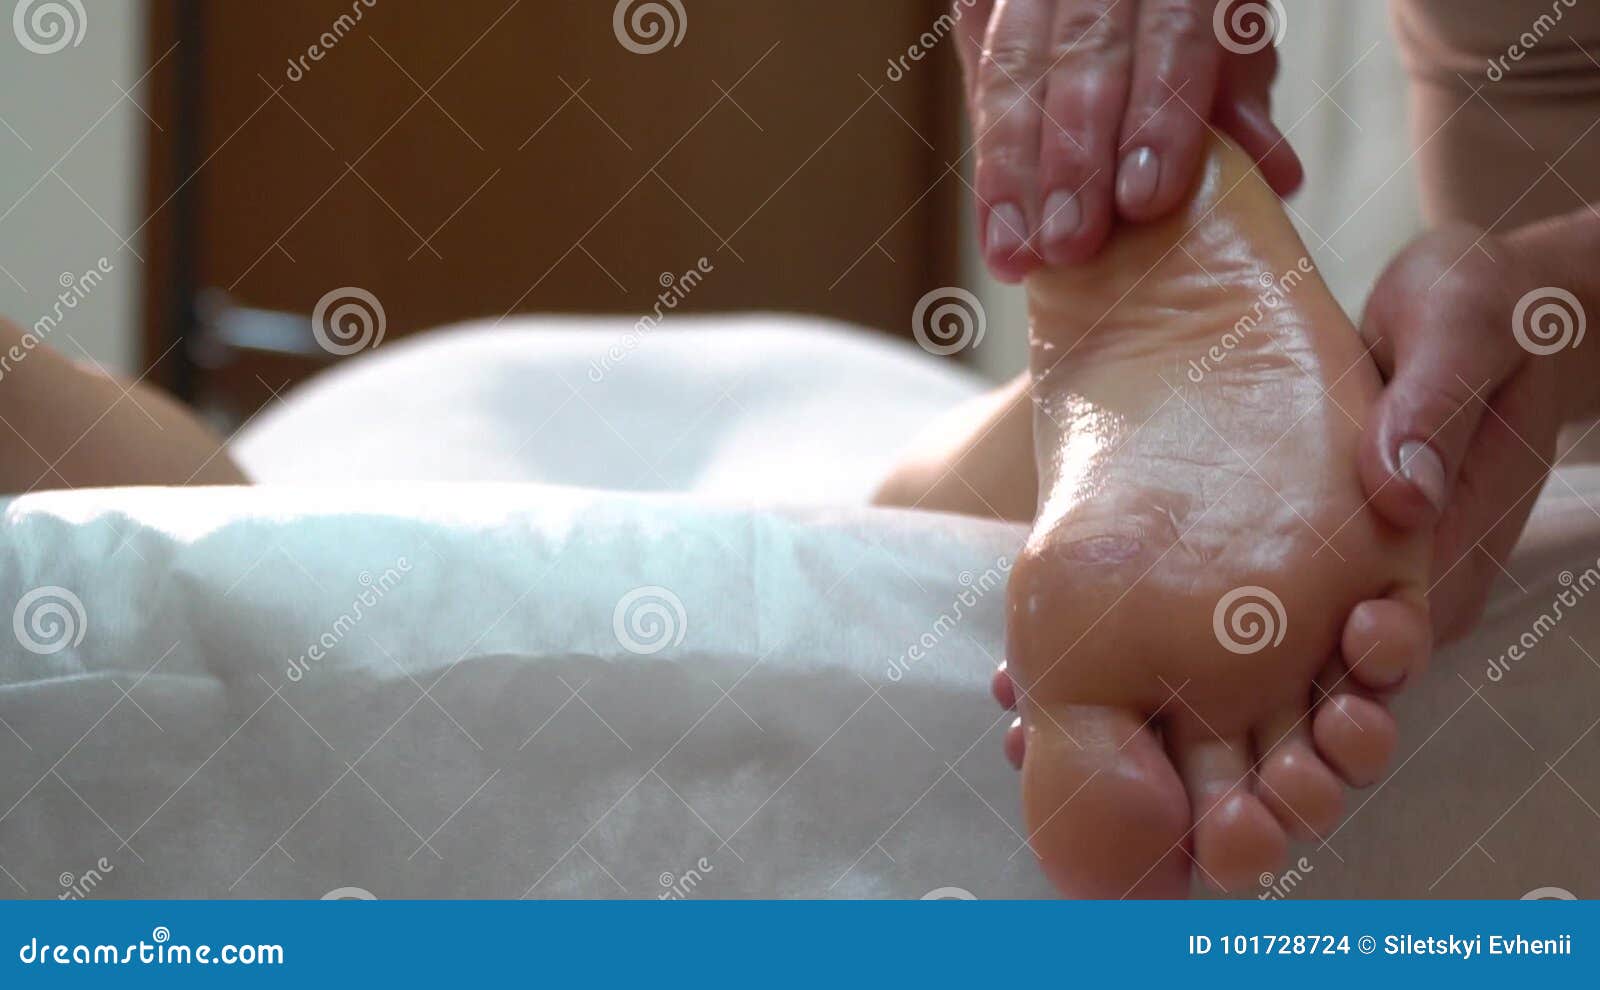 Masseuses feet sprayed